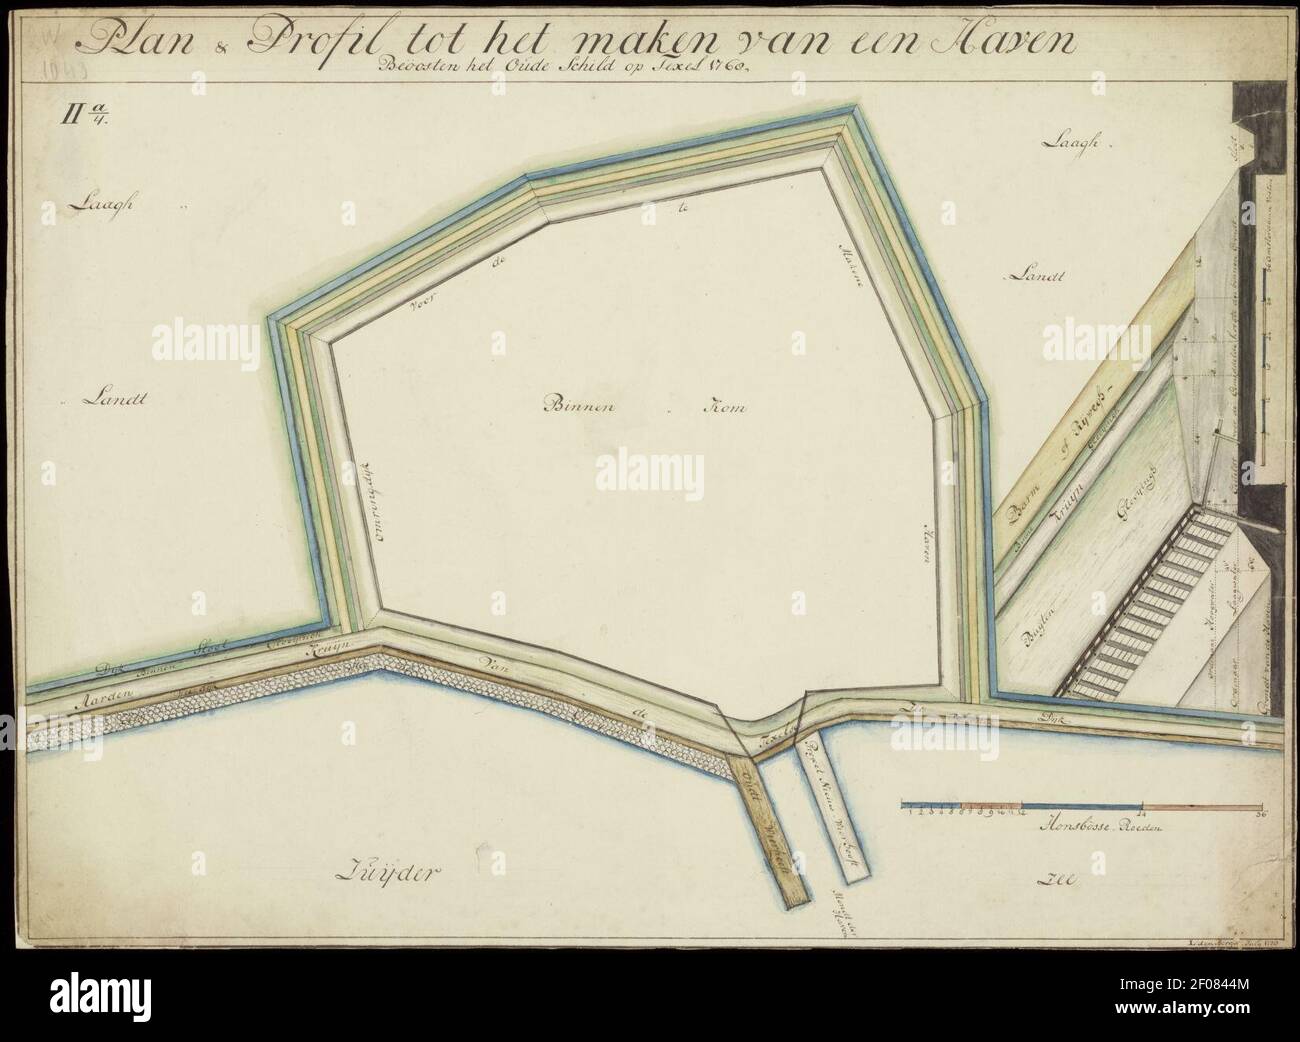 Plan en profil tot het maken van een Haven , beoosten het Oude Swild op Texel 1768. 2 esemplaren. Kopie van L. den Berger Juli 1778 en Januari 1779. Kleur. 44 x 56 cm, en 41 x 56 cm. L. den, Foto Stock